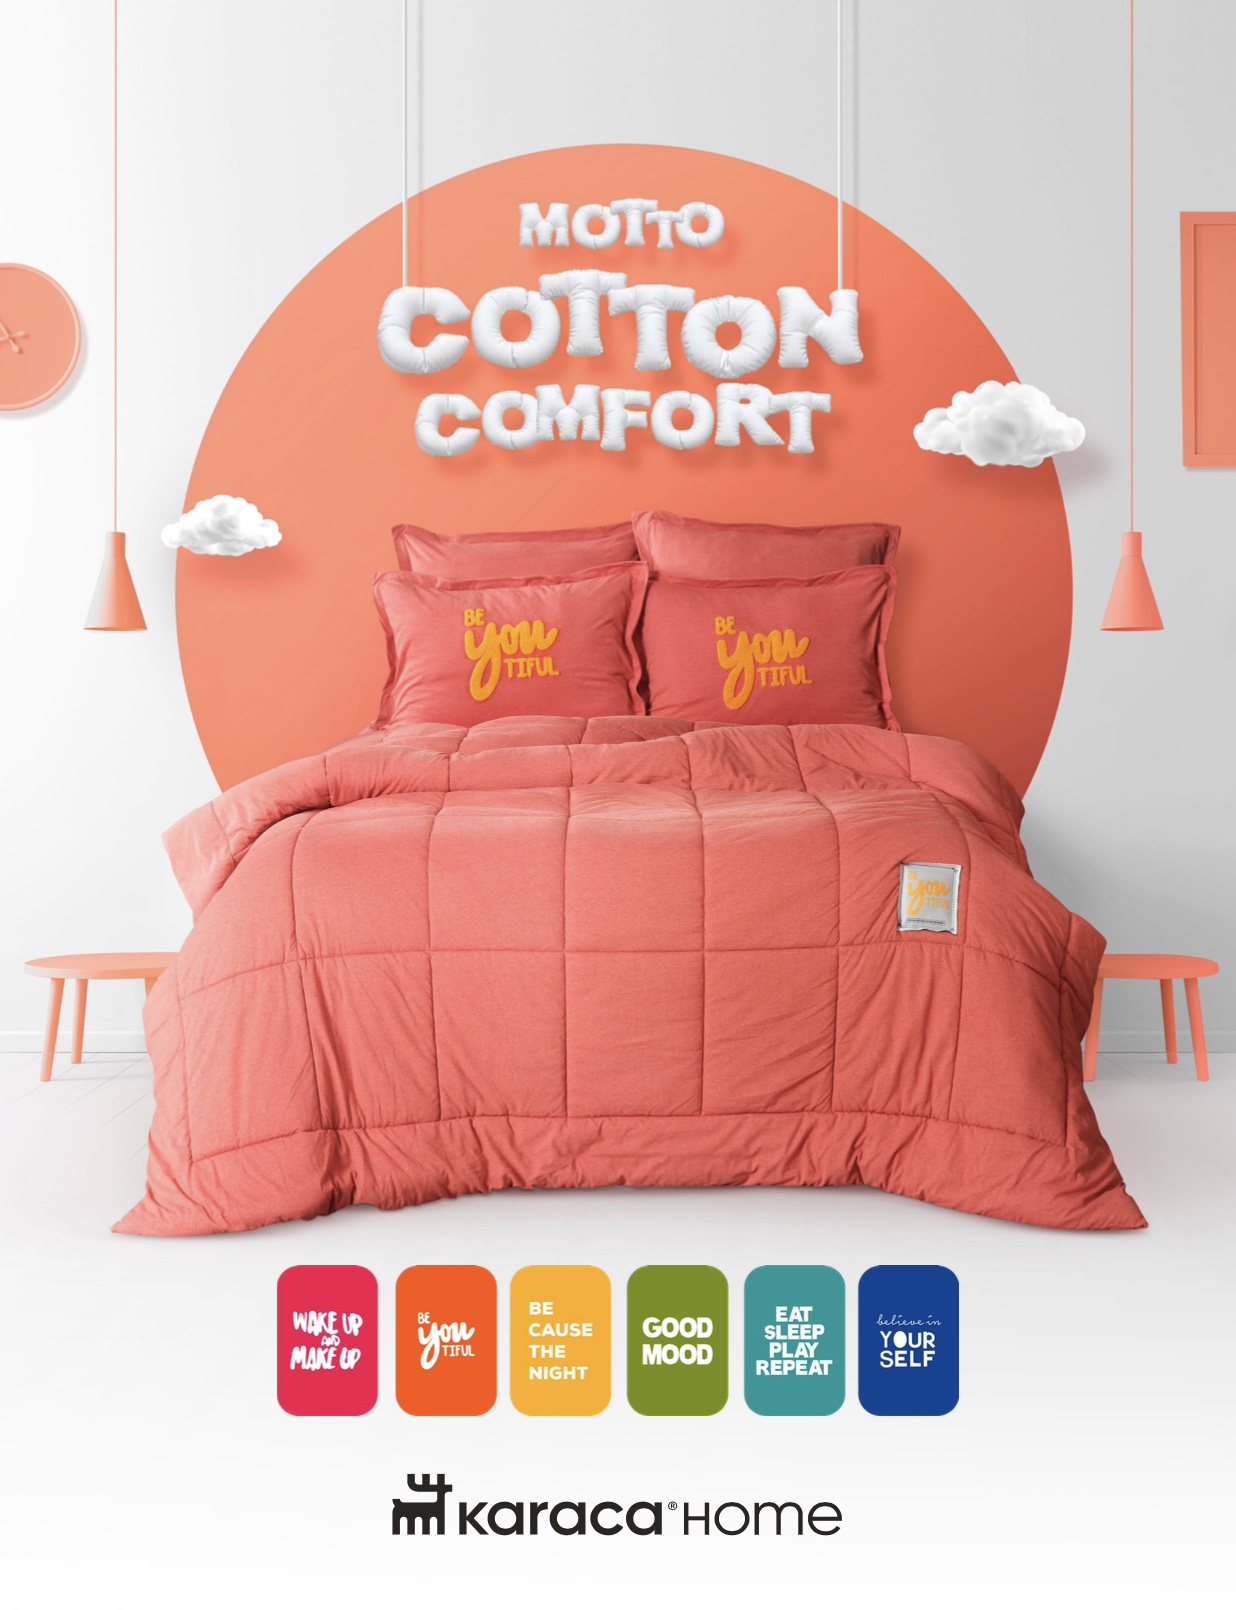 Karaca Home Motto Cotton Comfort